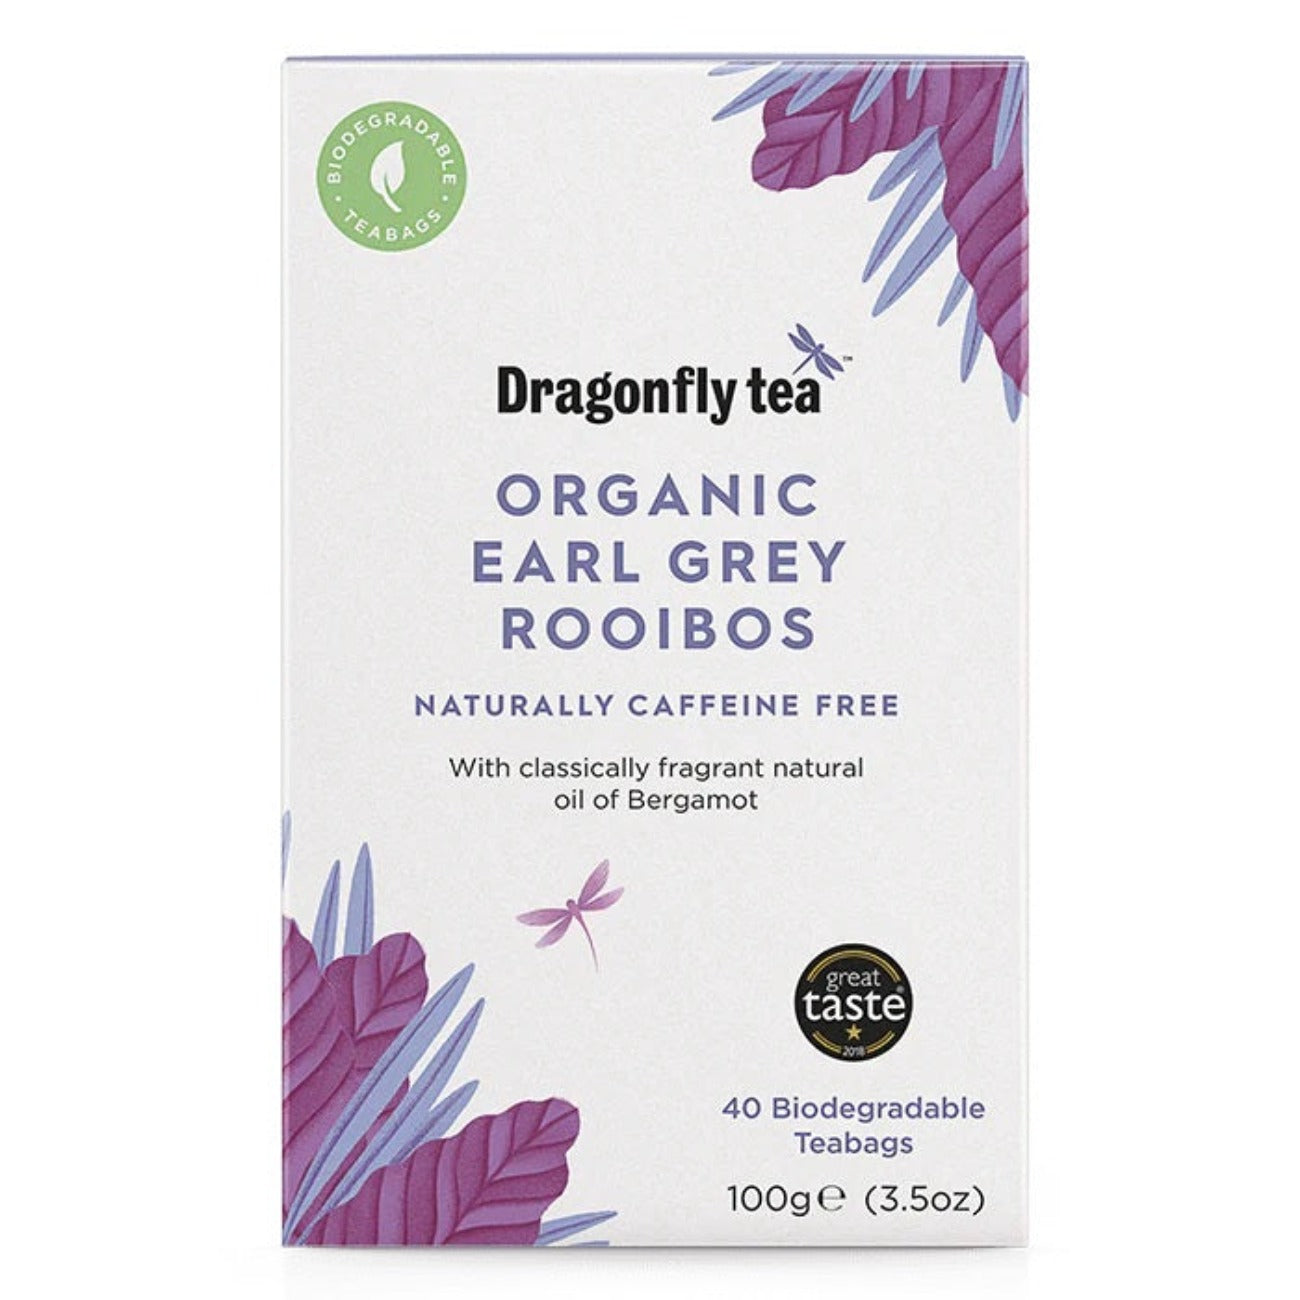 Earl Grey Rooibos Tea 40 bags